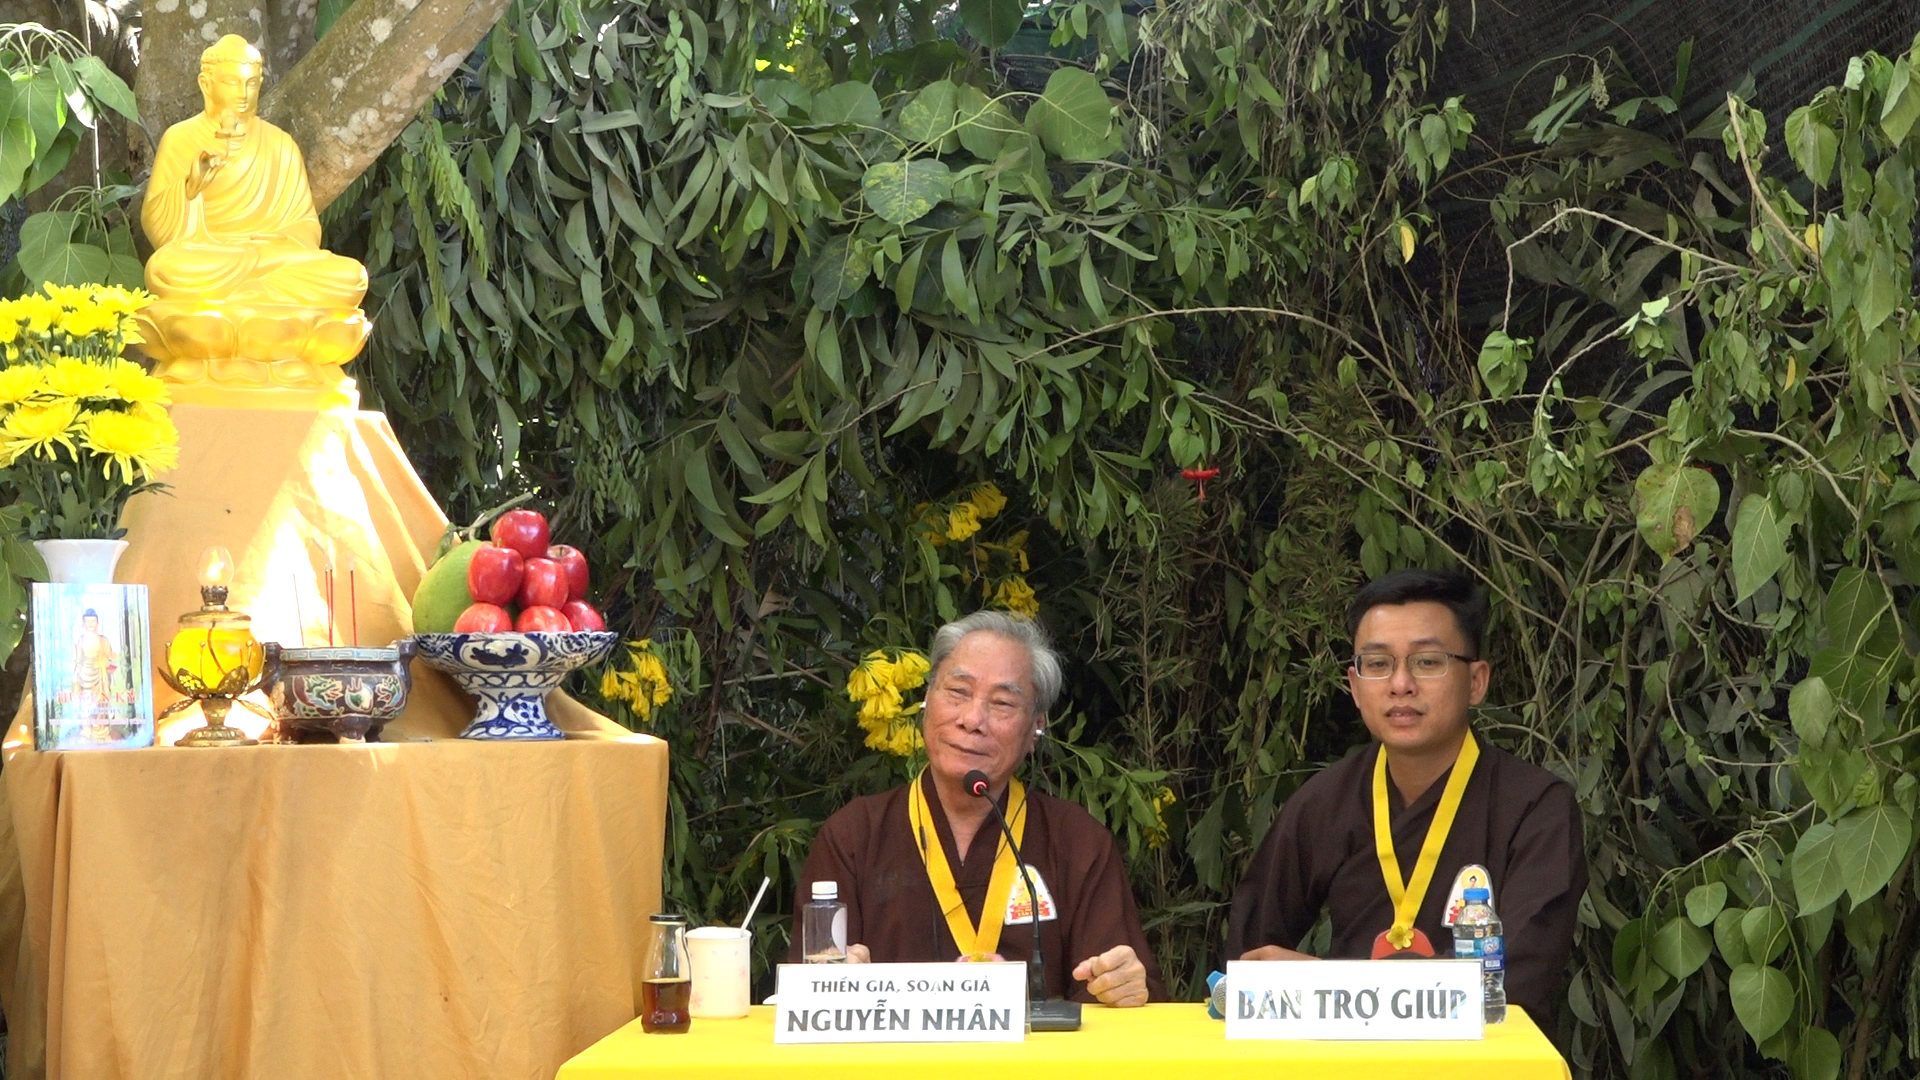 Video Giải Đáp Đạo Phật Thiền tông ngày 23/02/2020